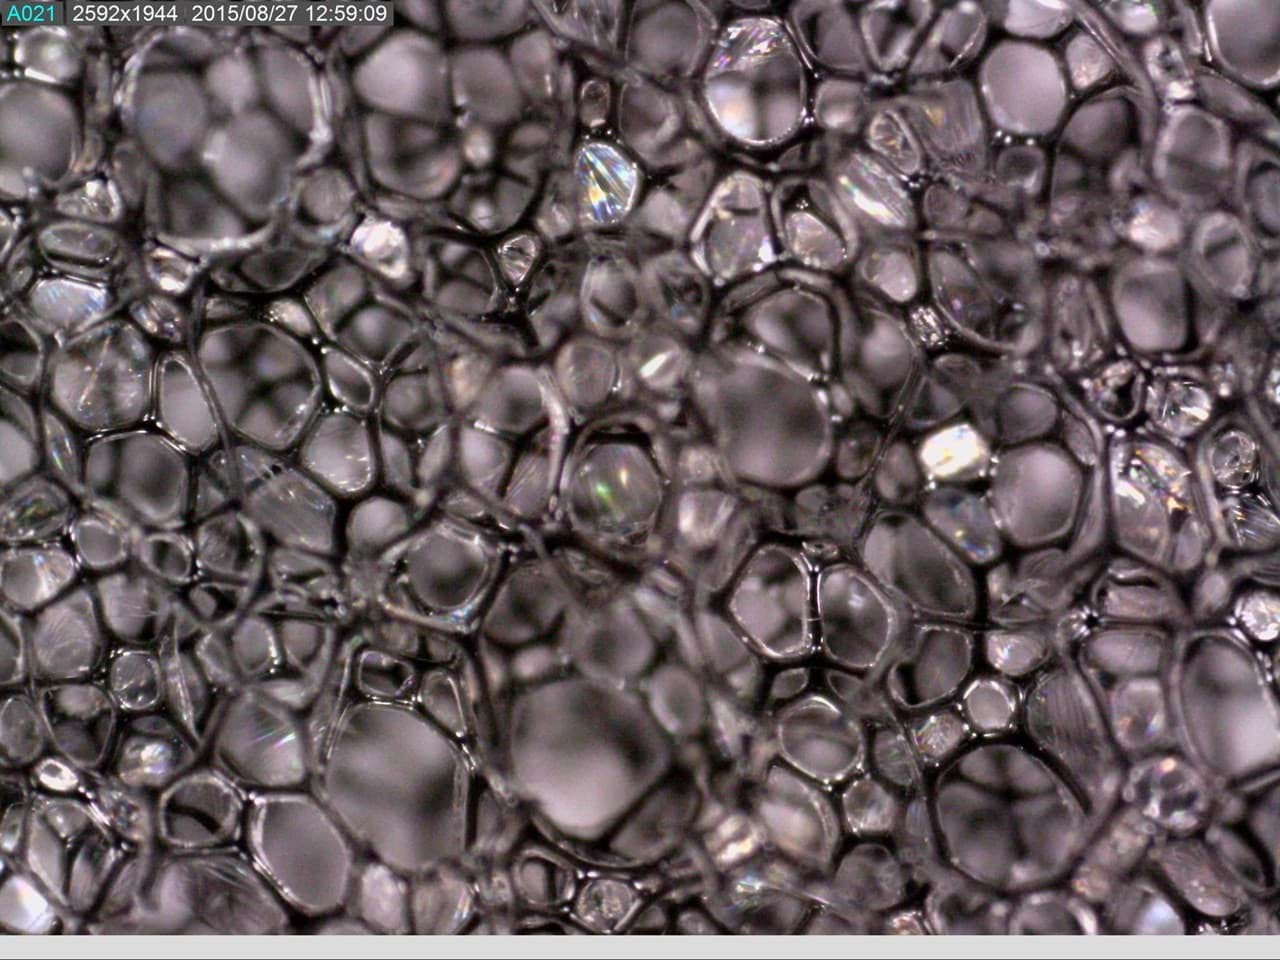 Foto von Zellen unter dem Mikroskop. Ein Beispiel von dem was man mit einem Dino-Lite Mikroskop machen kann.